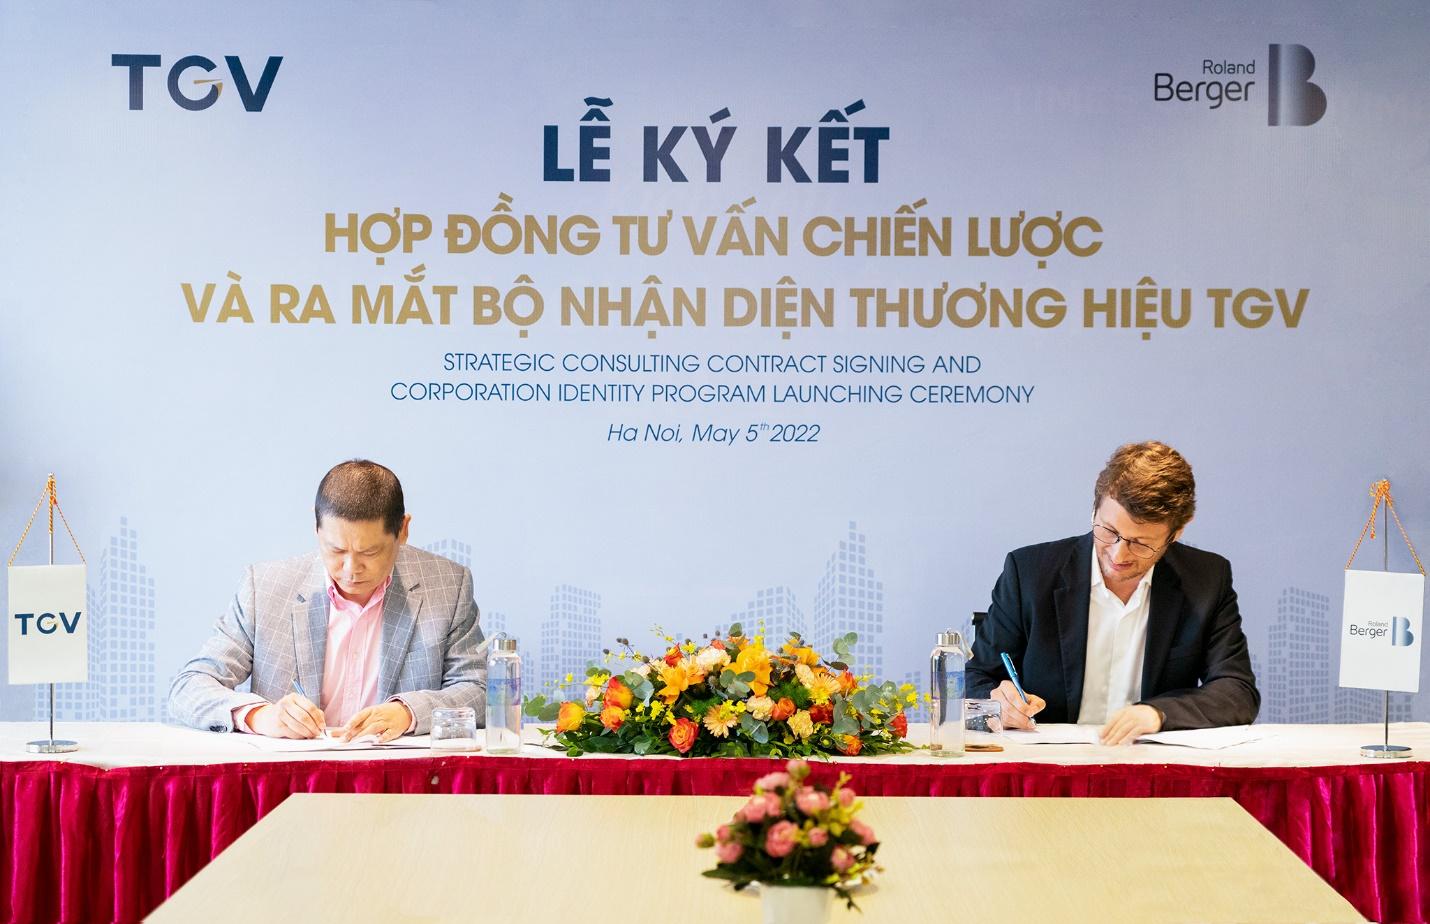 Times Garden Việt Nam: Ký kết hợp đồng tư vấn chiến lược và ra mắt bộ nhận diện thương hiệu mới 